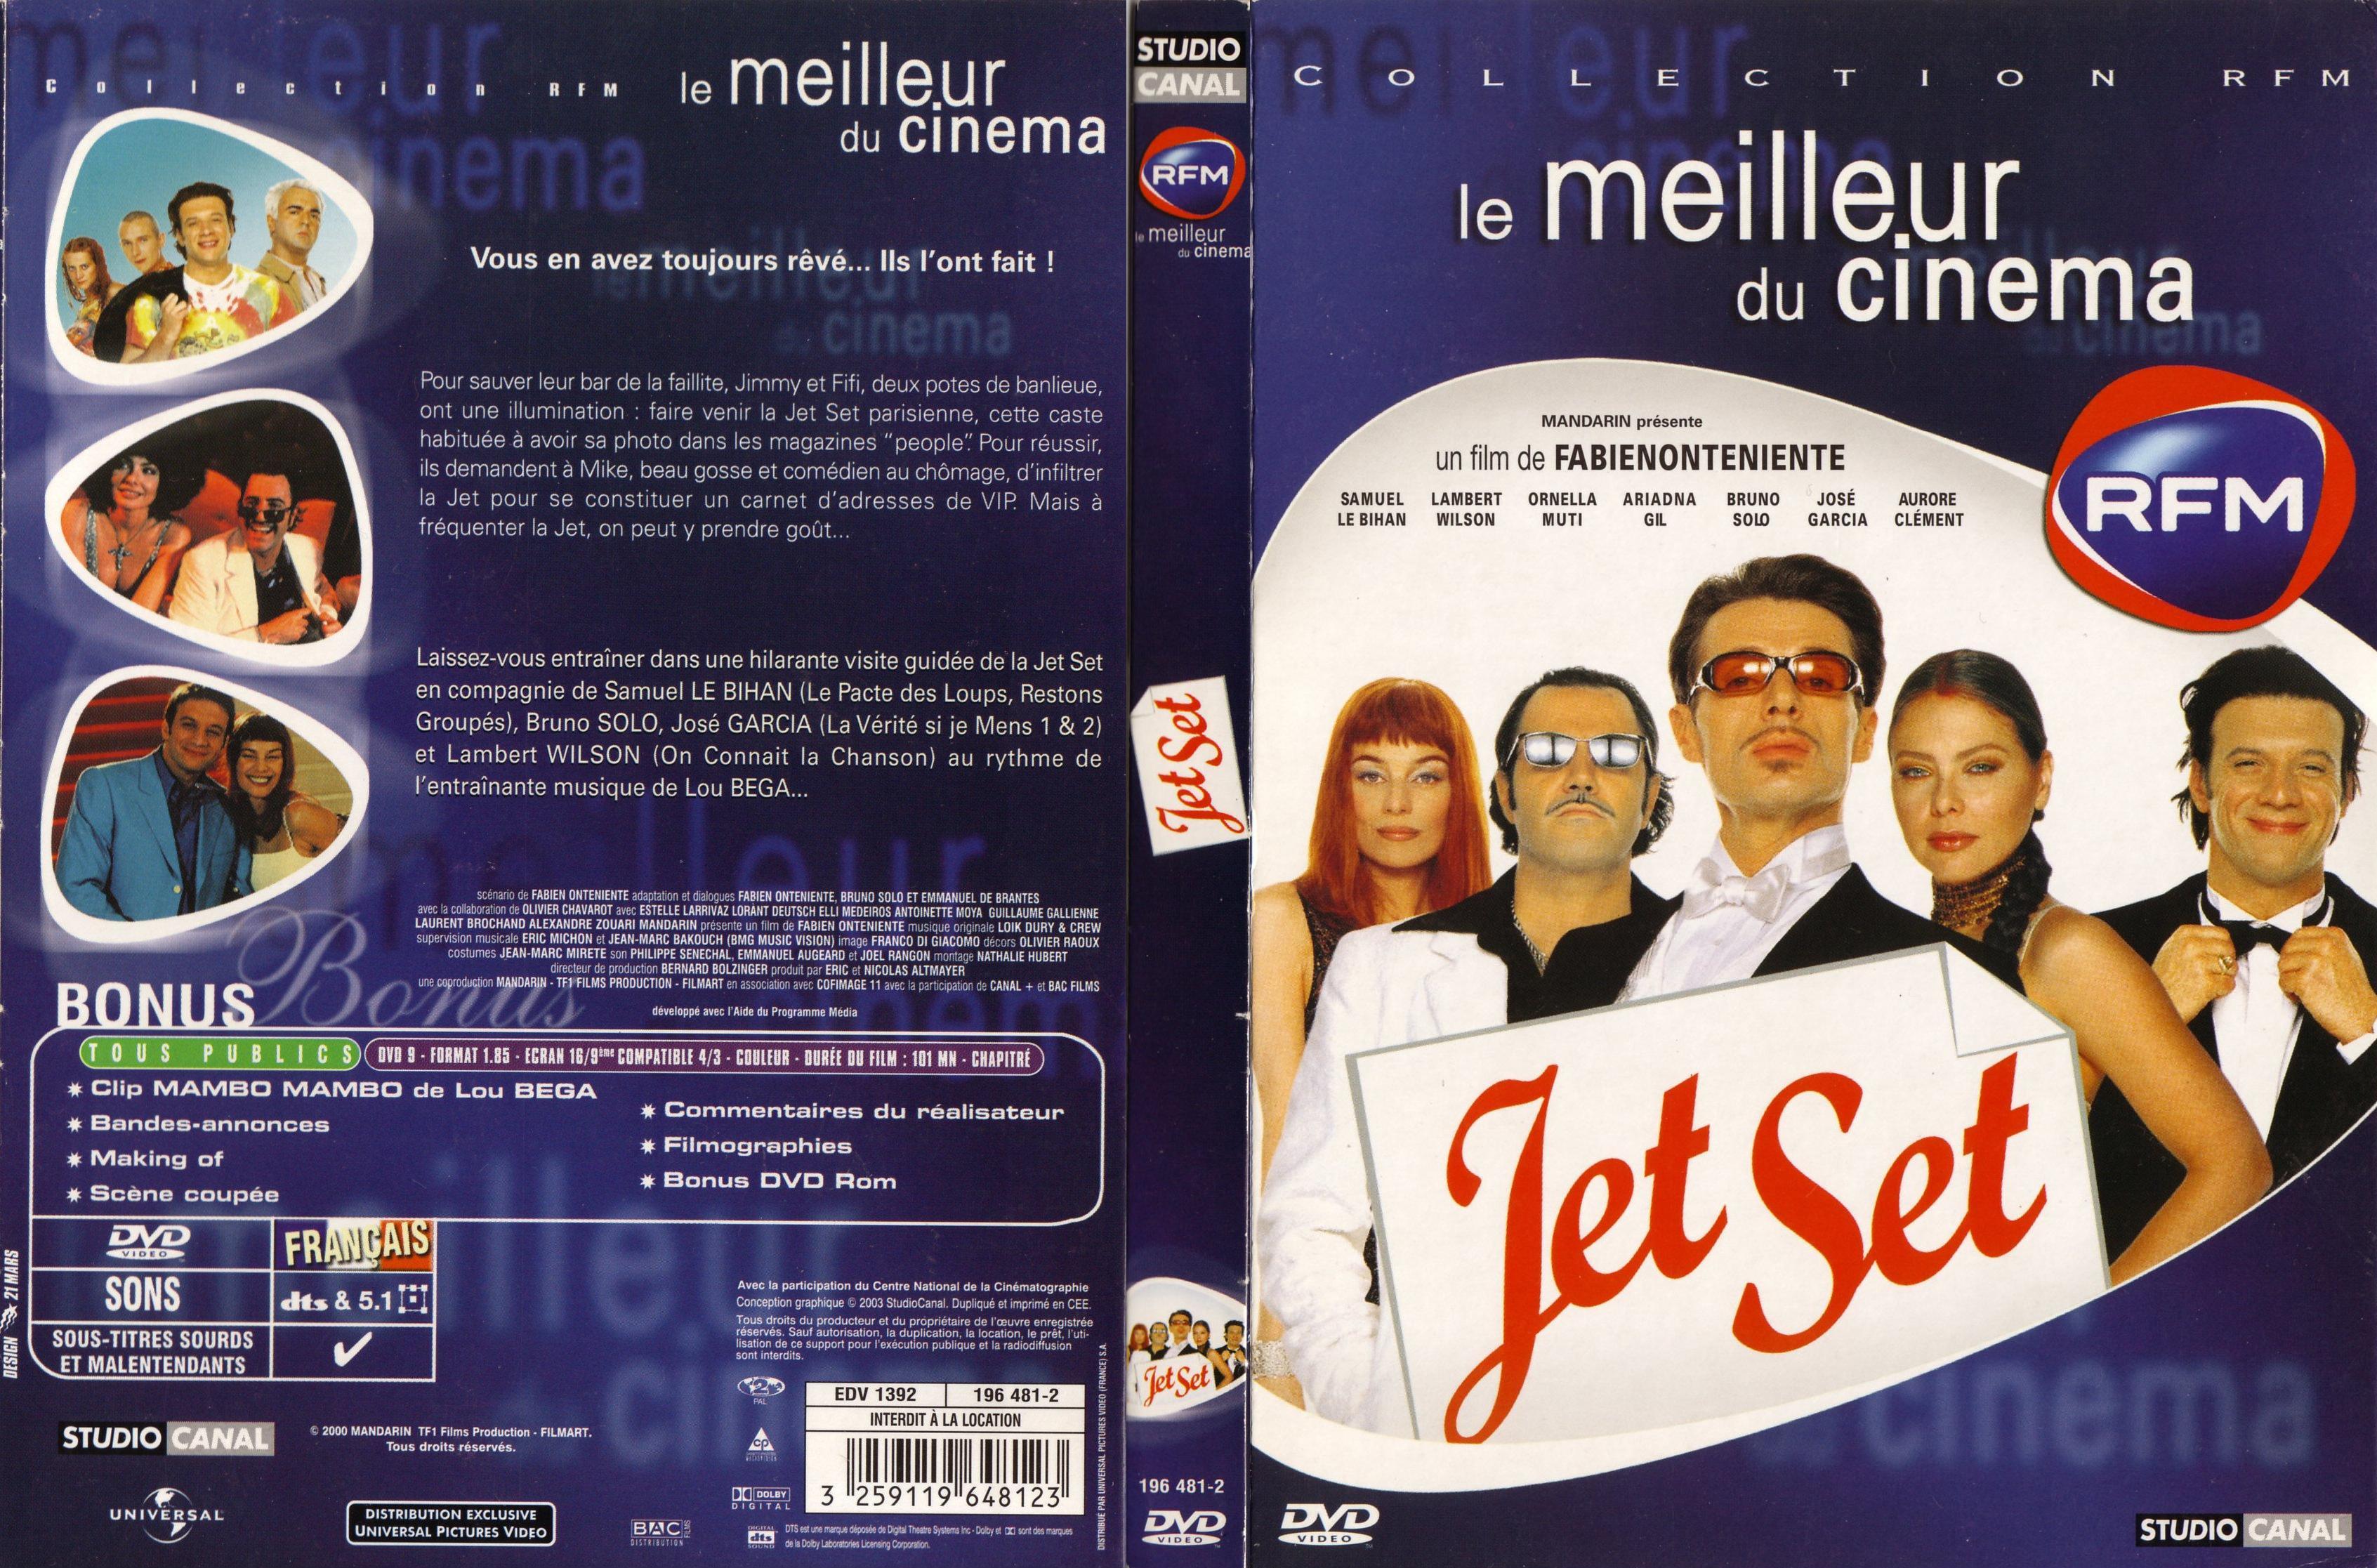 Jaquette DVD Jet set v2